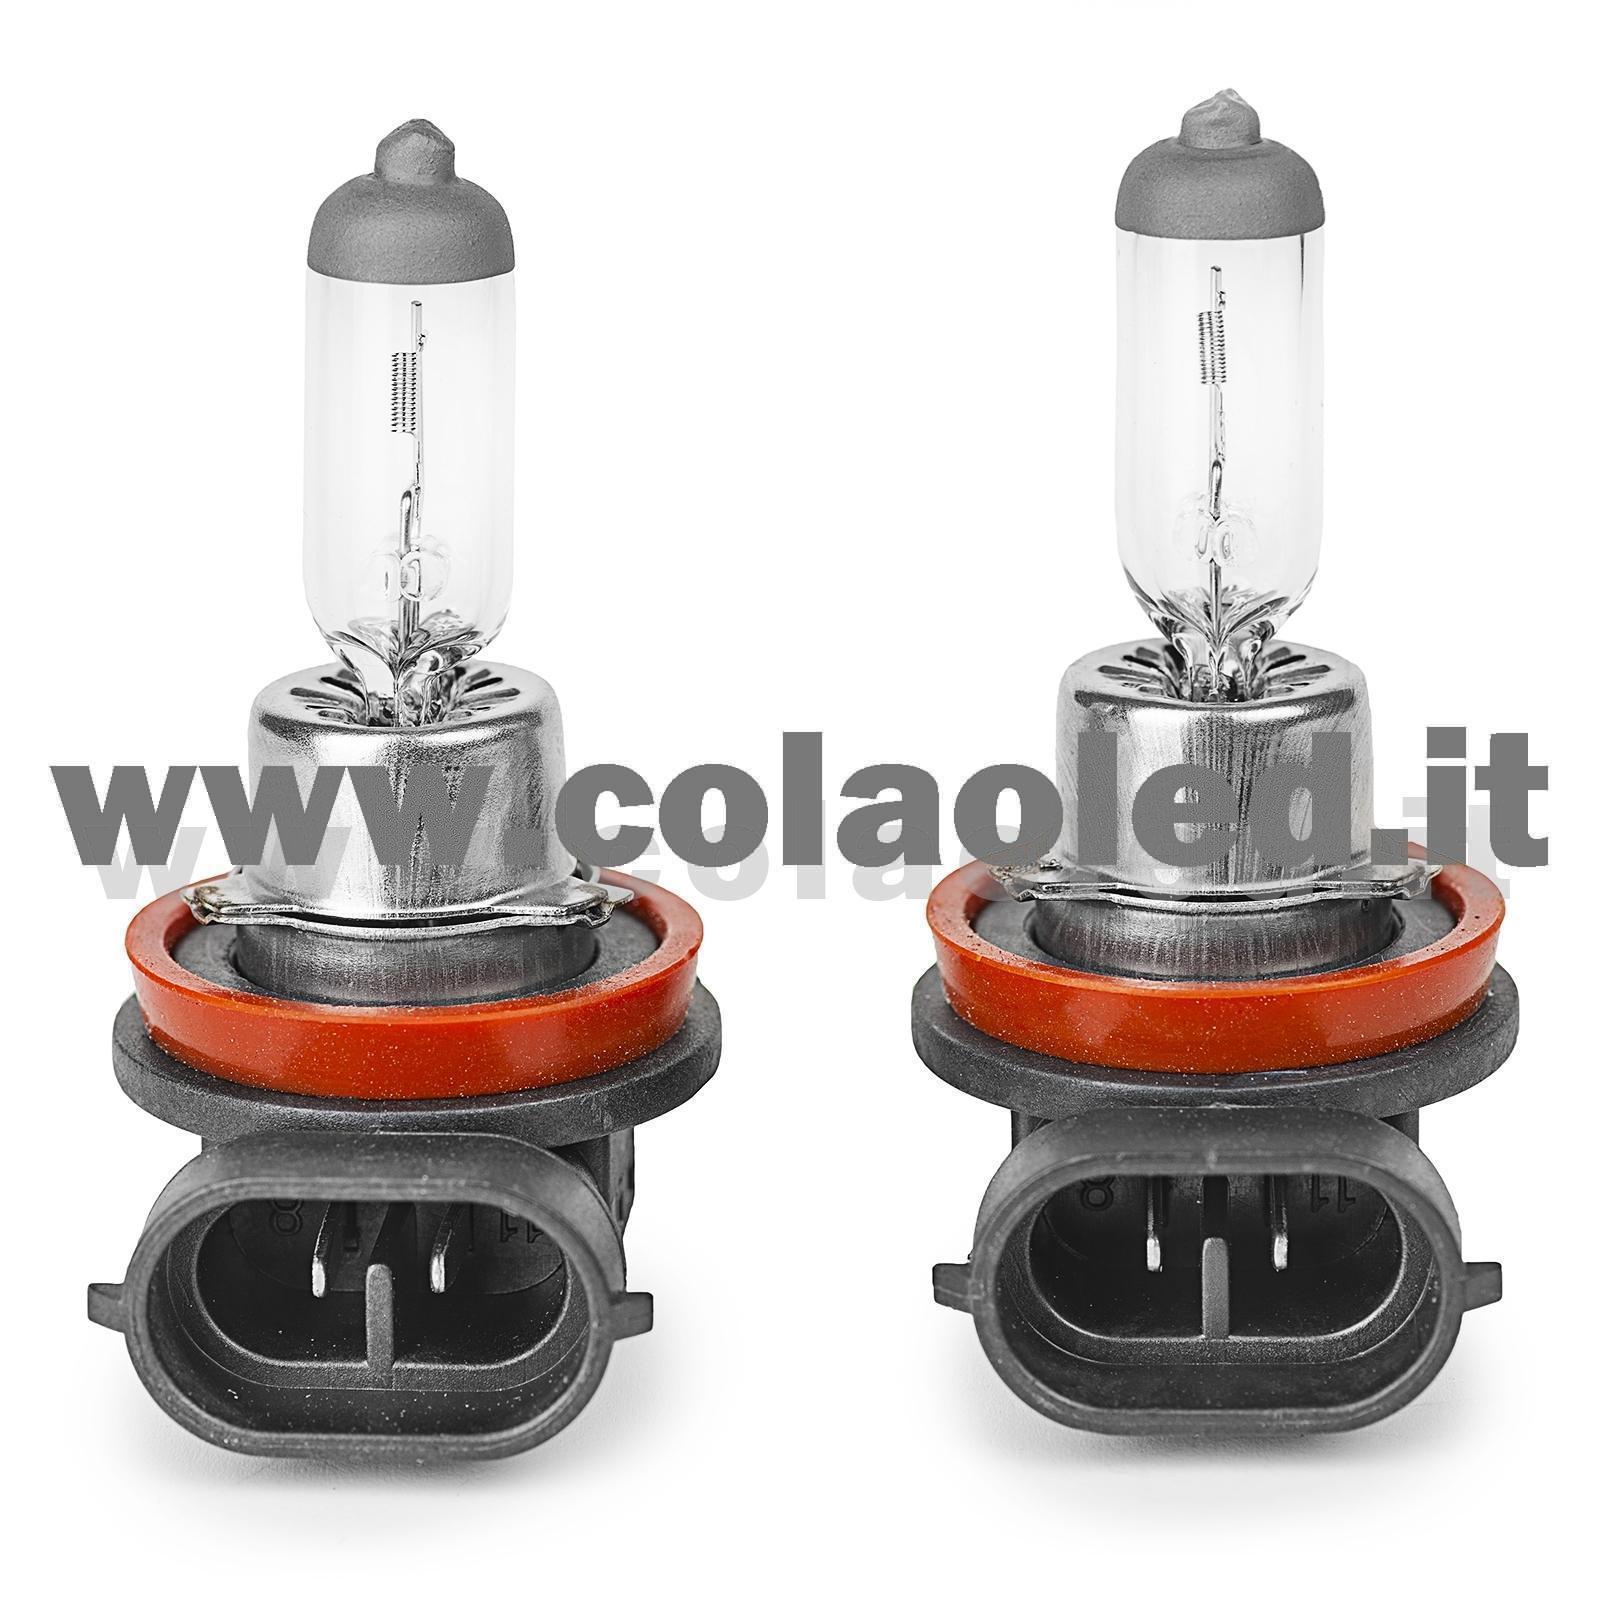 H11 2 LAMPADE ALOGENO GIALLO 12V 55W H11 – Colaoled